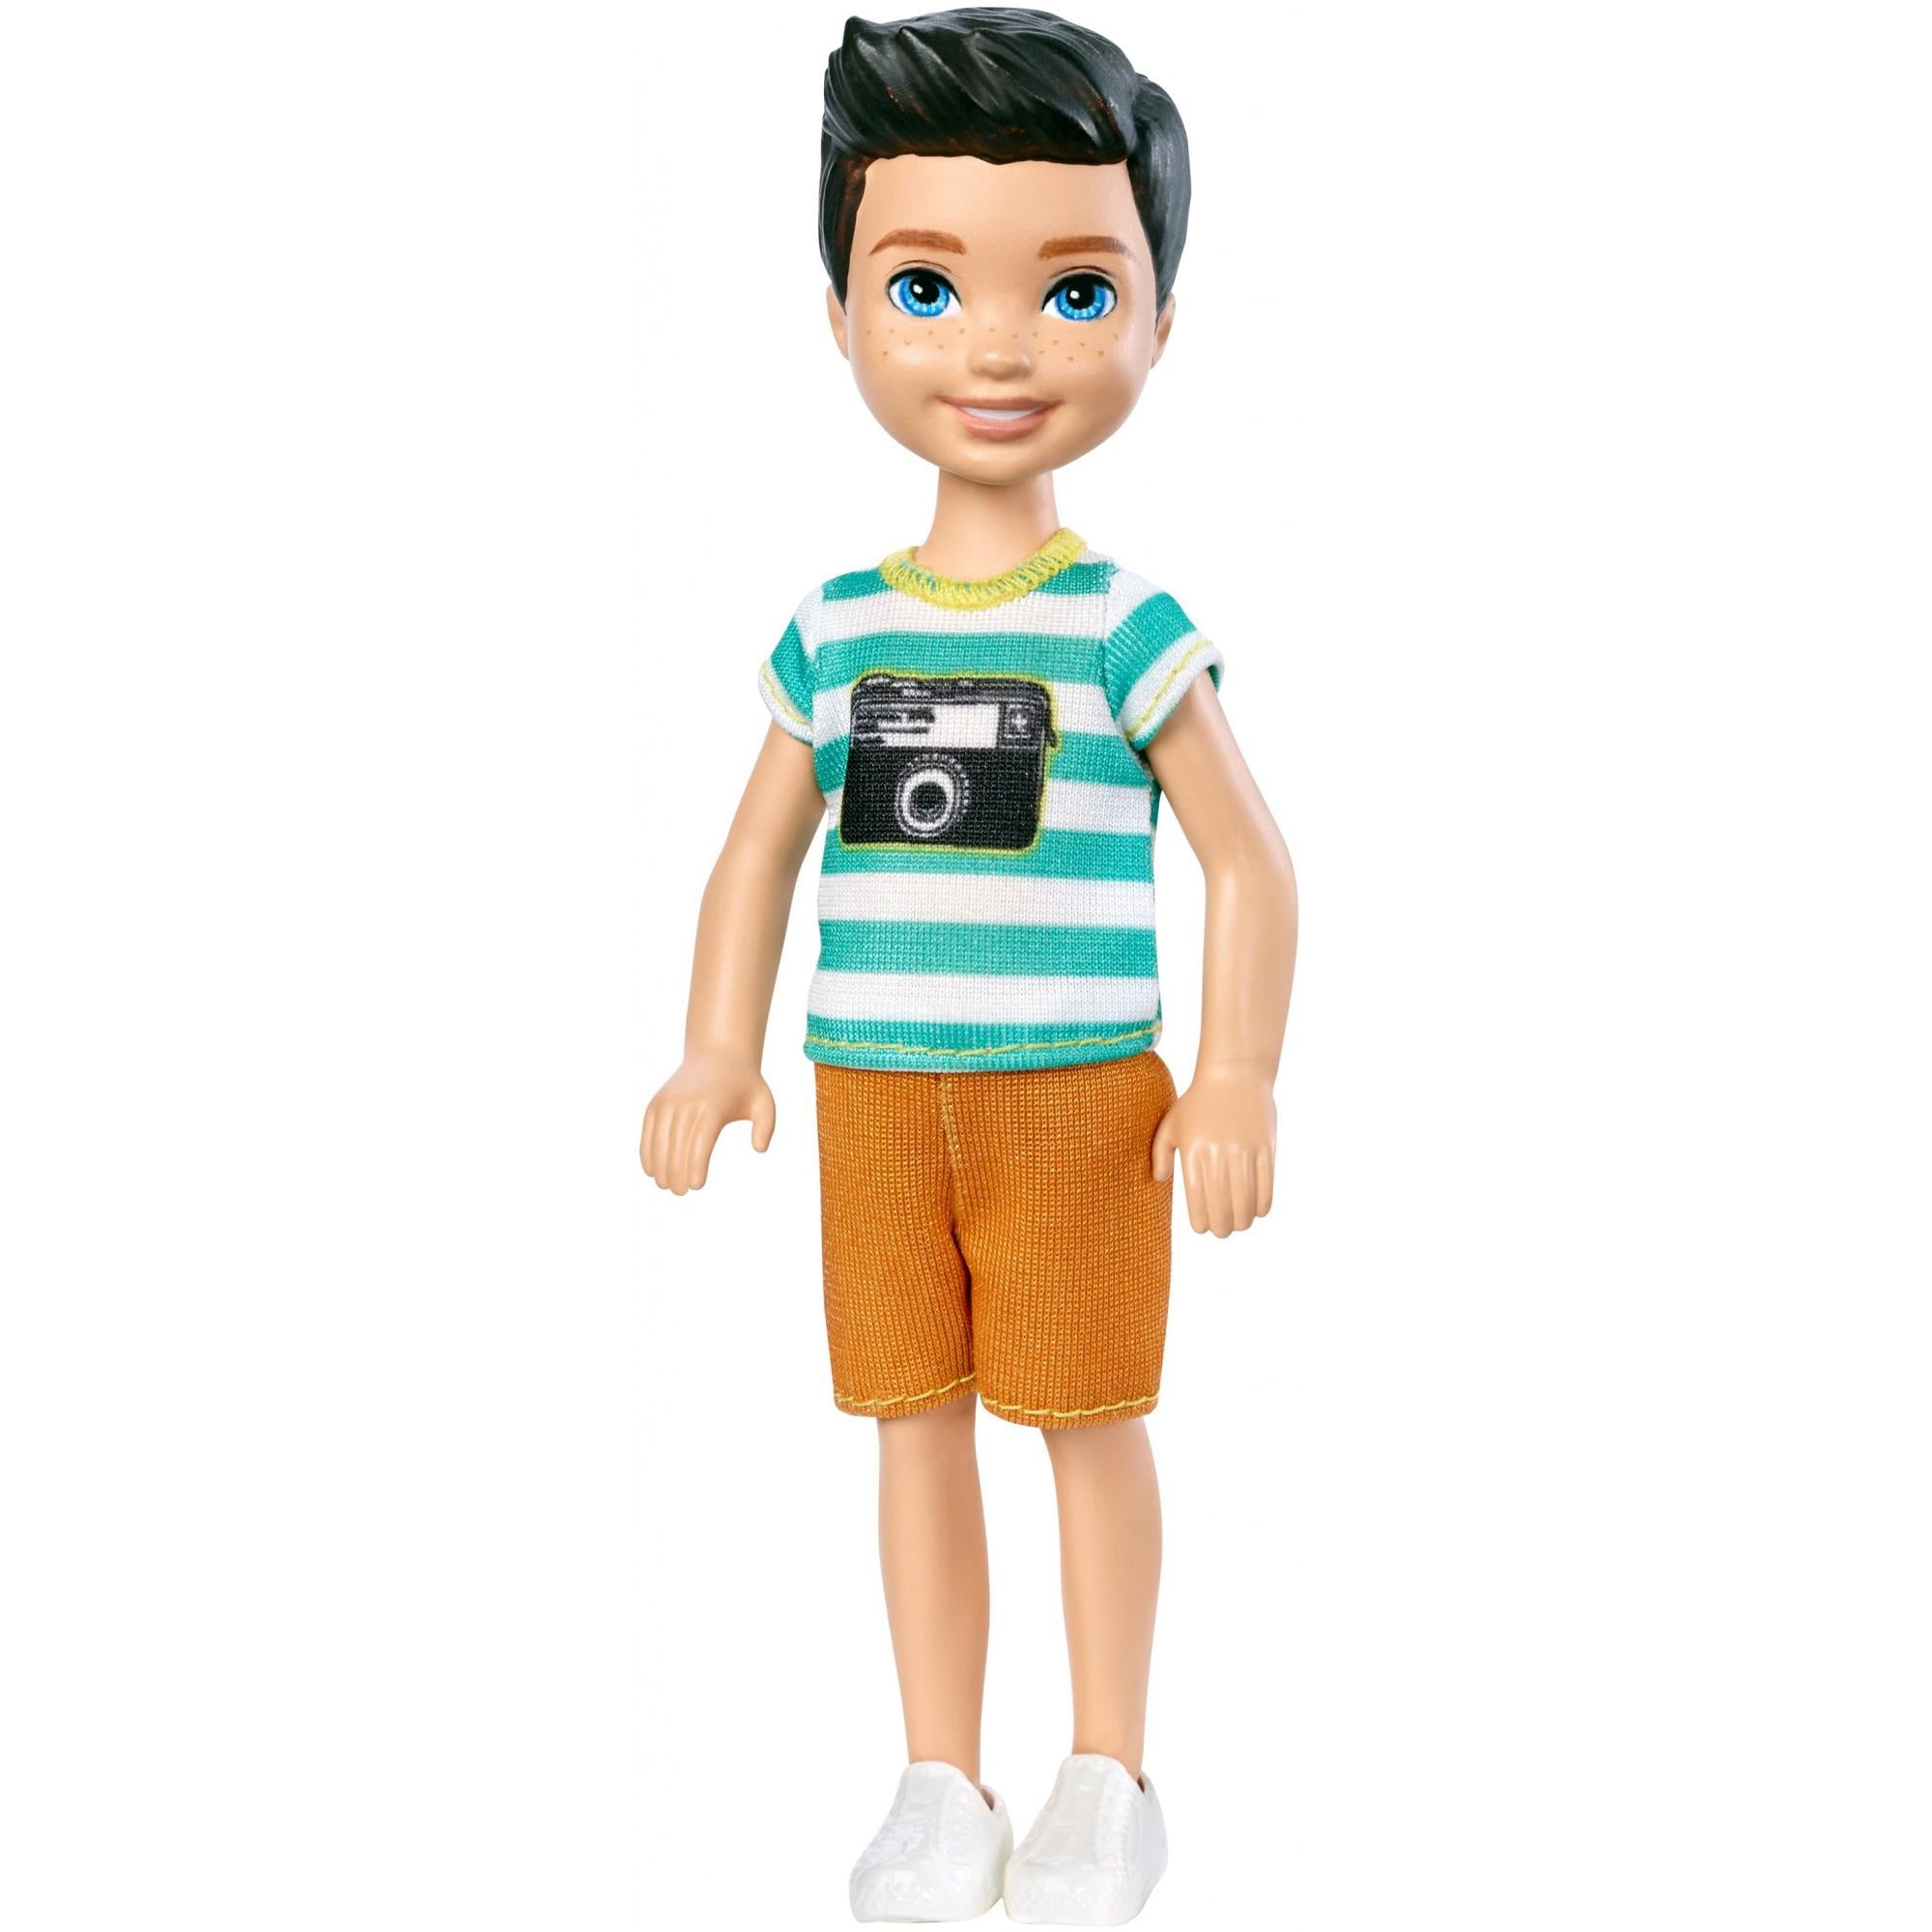 Barbie Club Chelsea Friend Boy Doll 